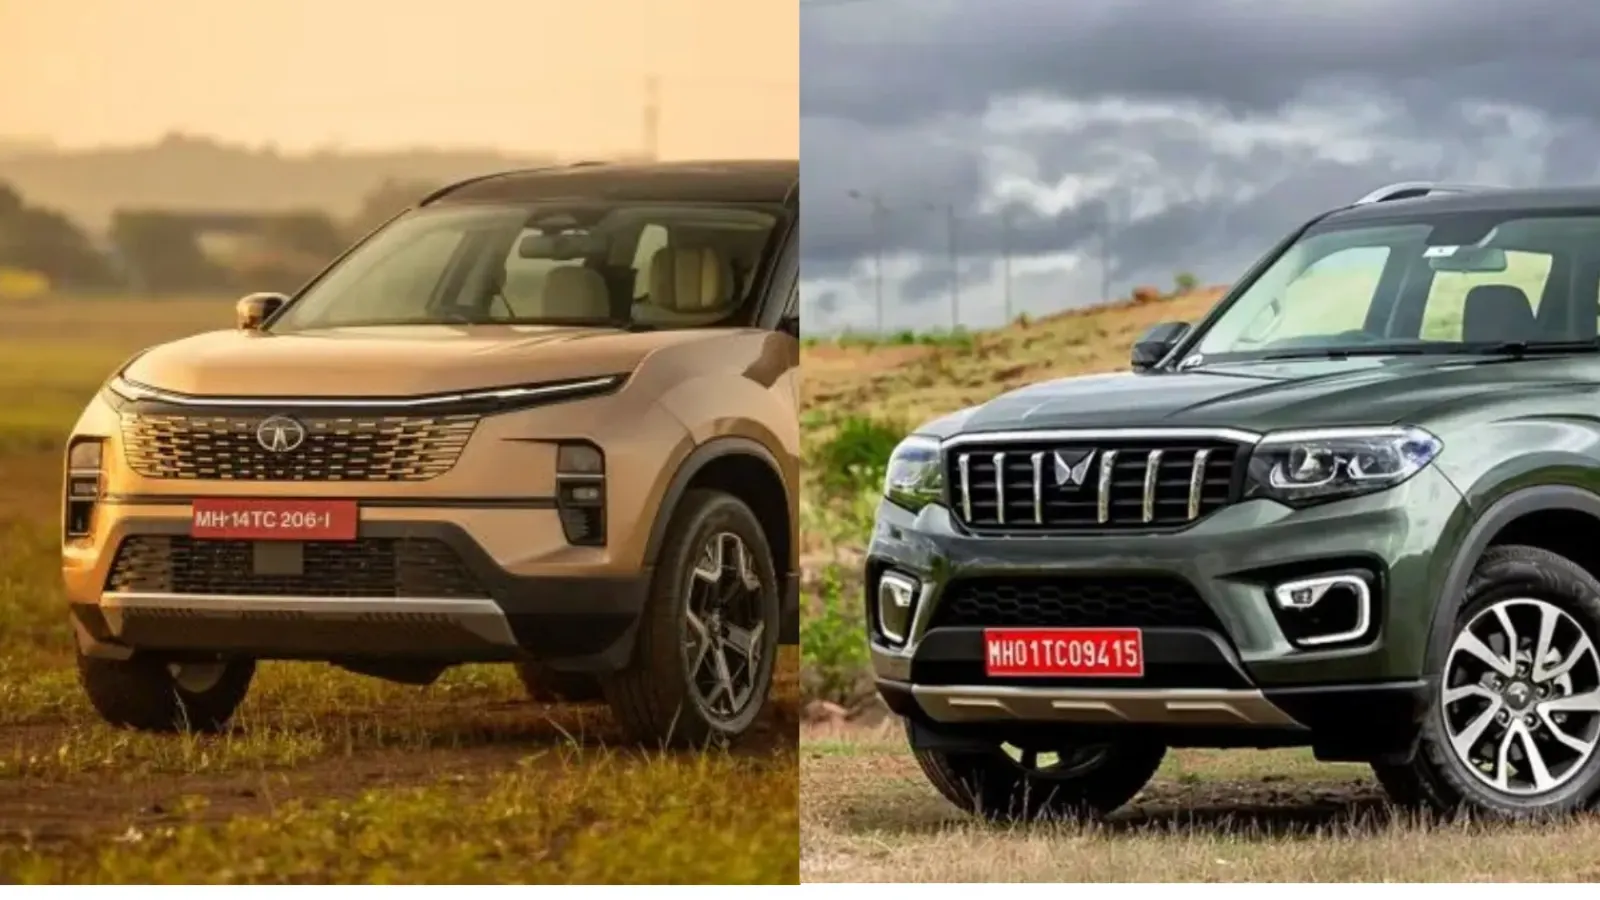 Tata Safari Facelift vs Scorpio N comparison